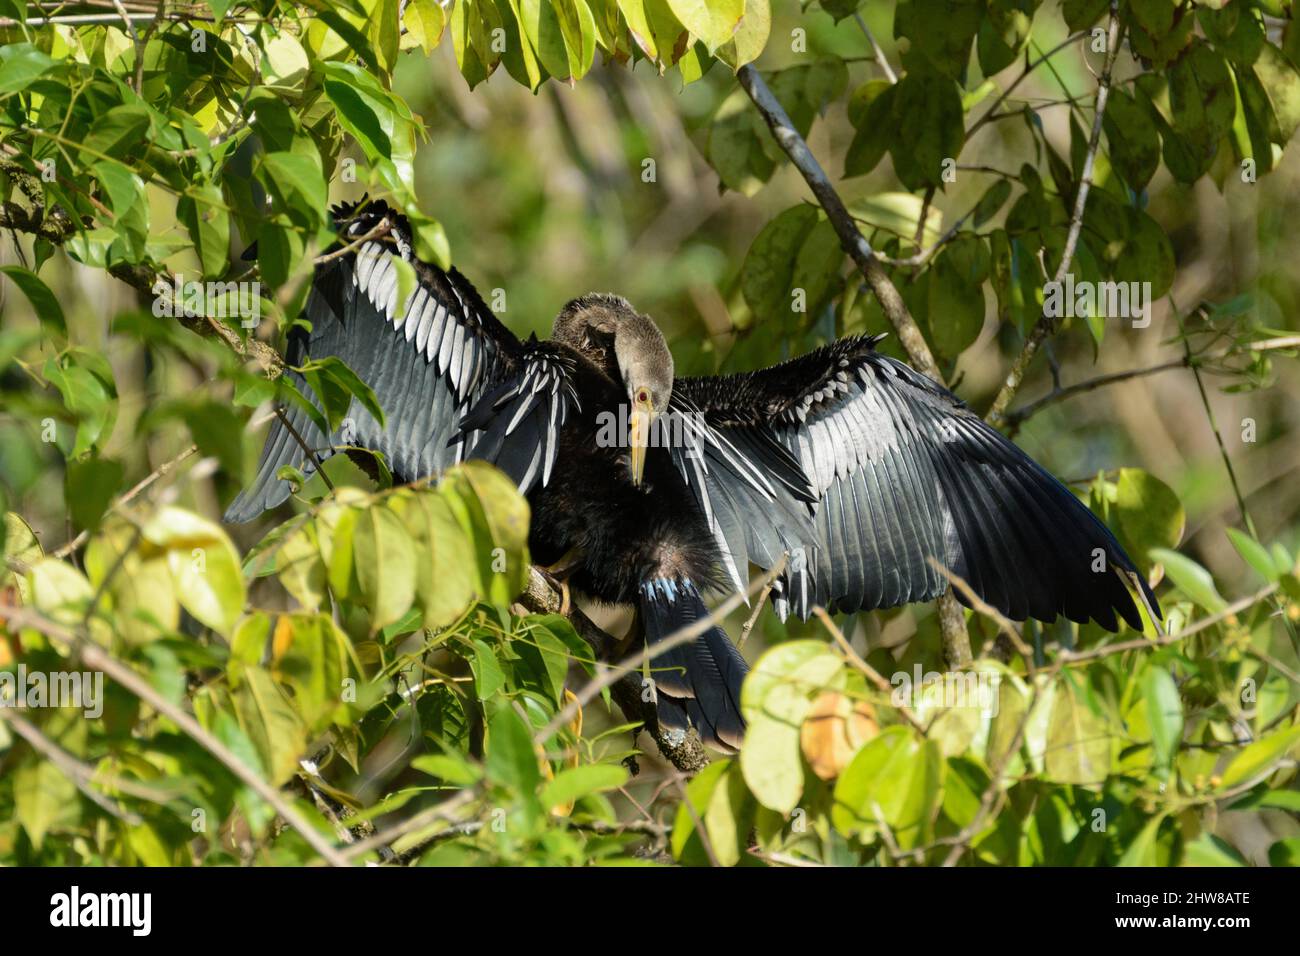 Anhinga oiseau (Anhinga anhinga) prêchant ses plumes dans le parc national de Tortuguero, province de Limon, Costa Rica. Aussi connu sous le nom de snakebird ... plus Banque D'Images